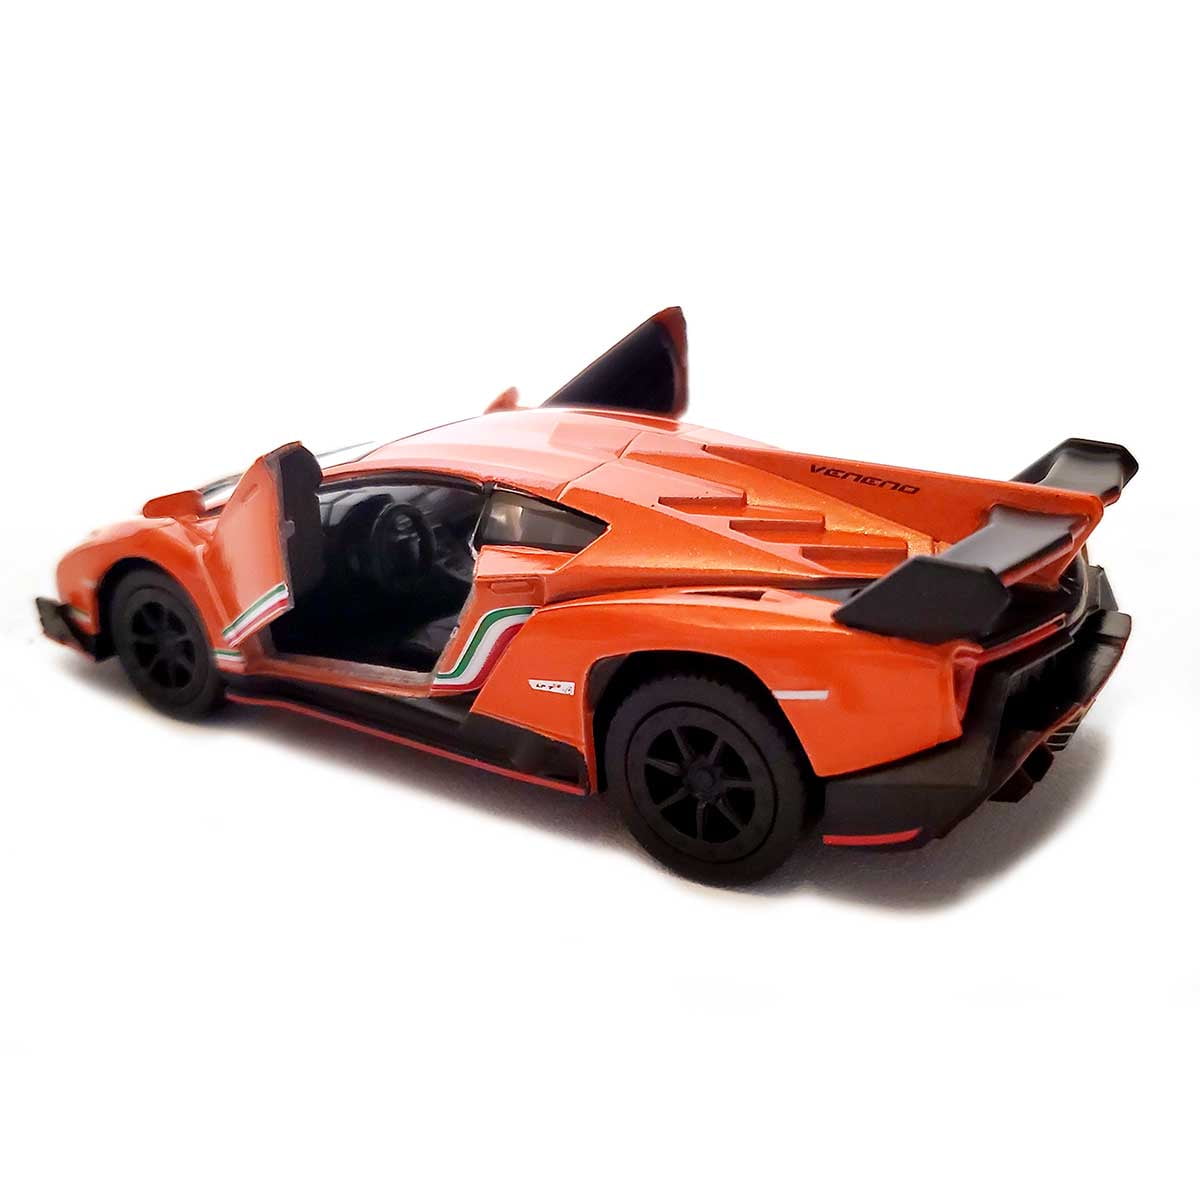 Lamborghini Veneno orange Toy Car model kinsmart 1/36 scale diecast open doors 